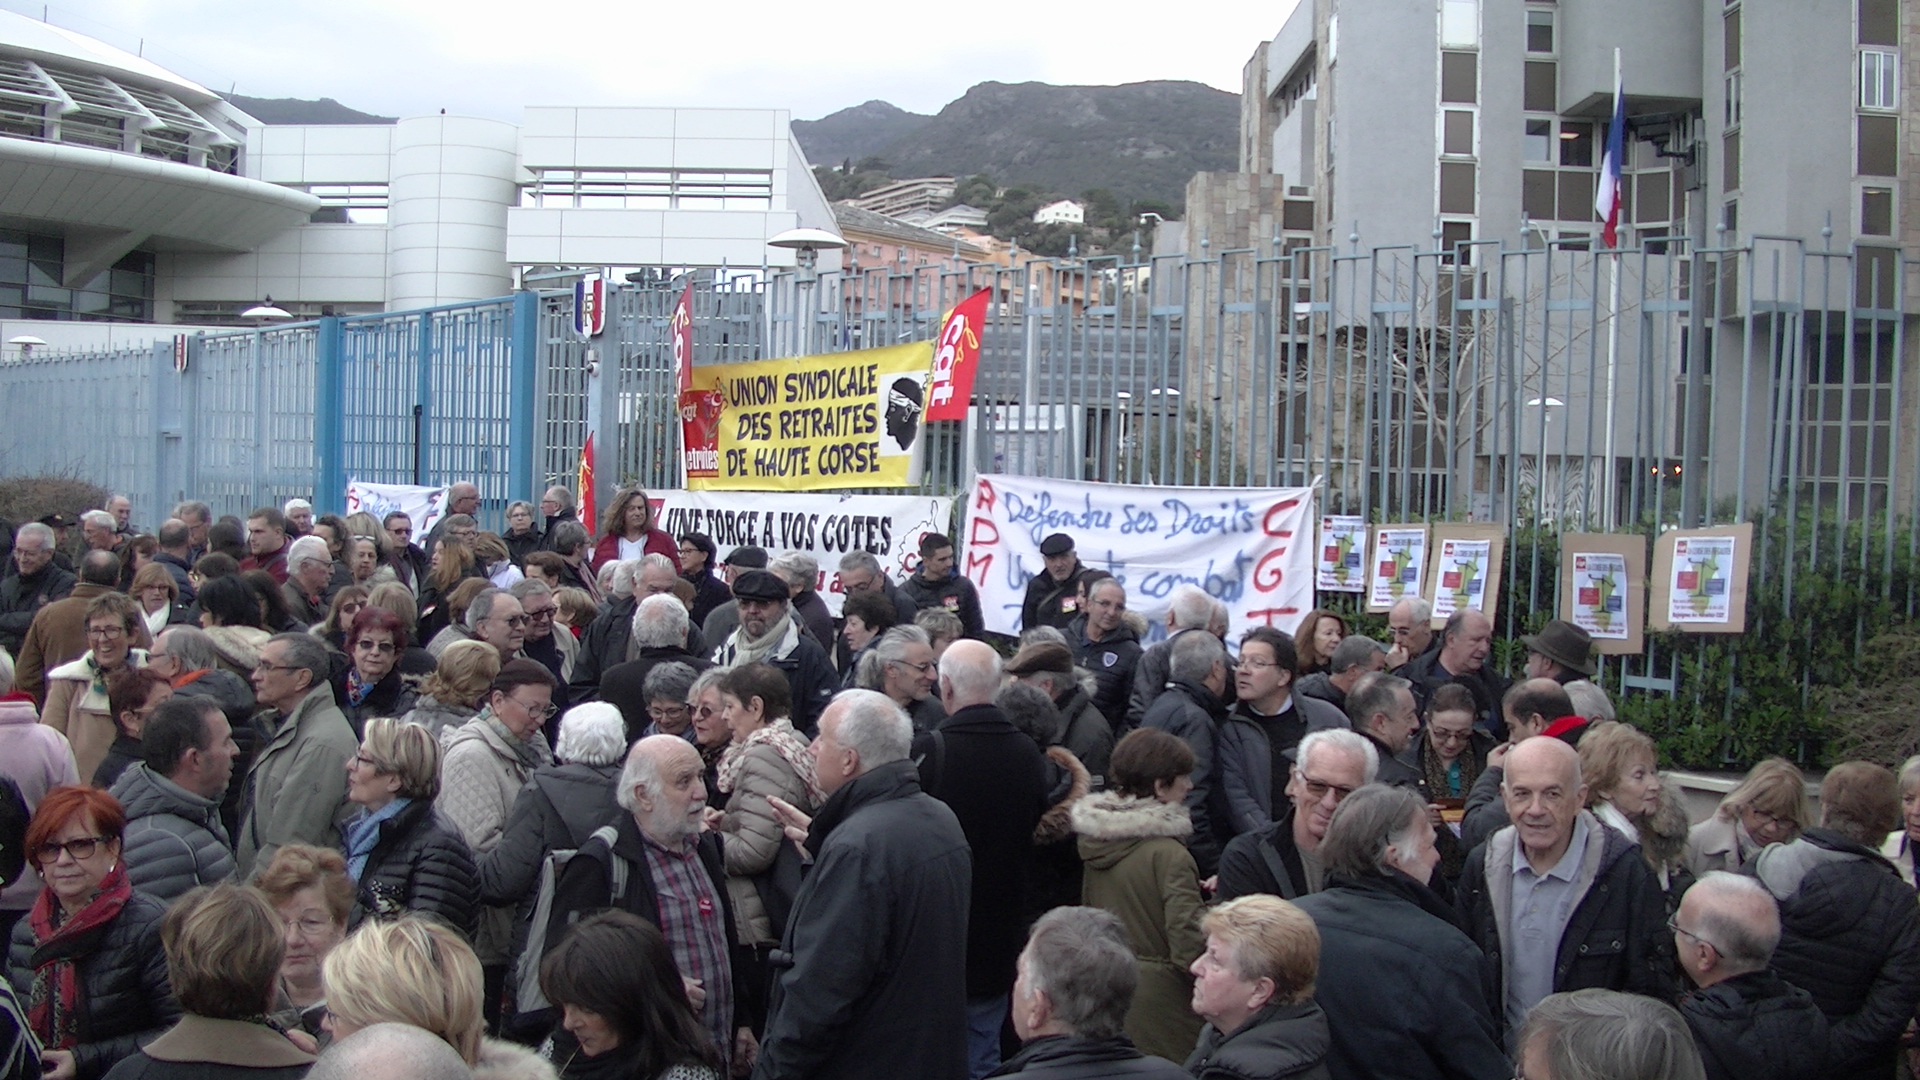 Bastia : Les aides à domicile et les retraités dans la rue